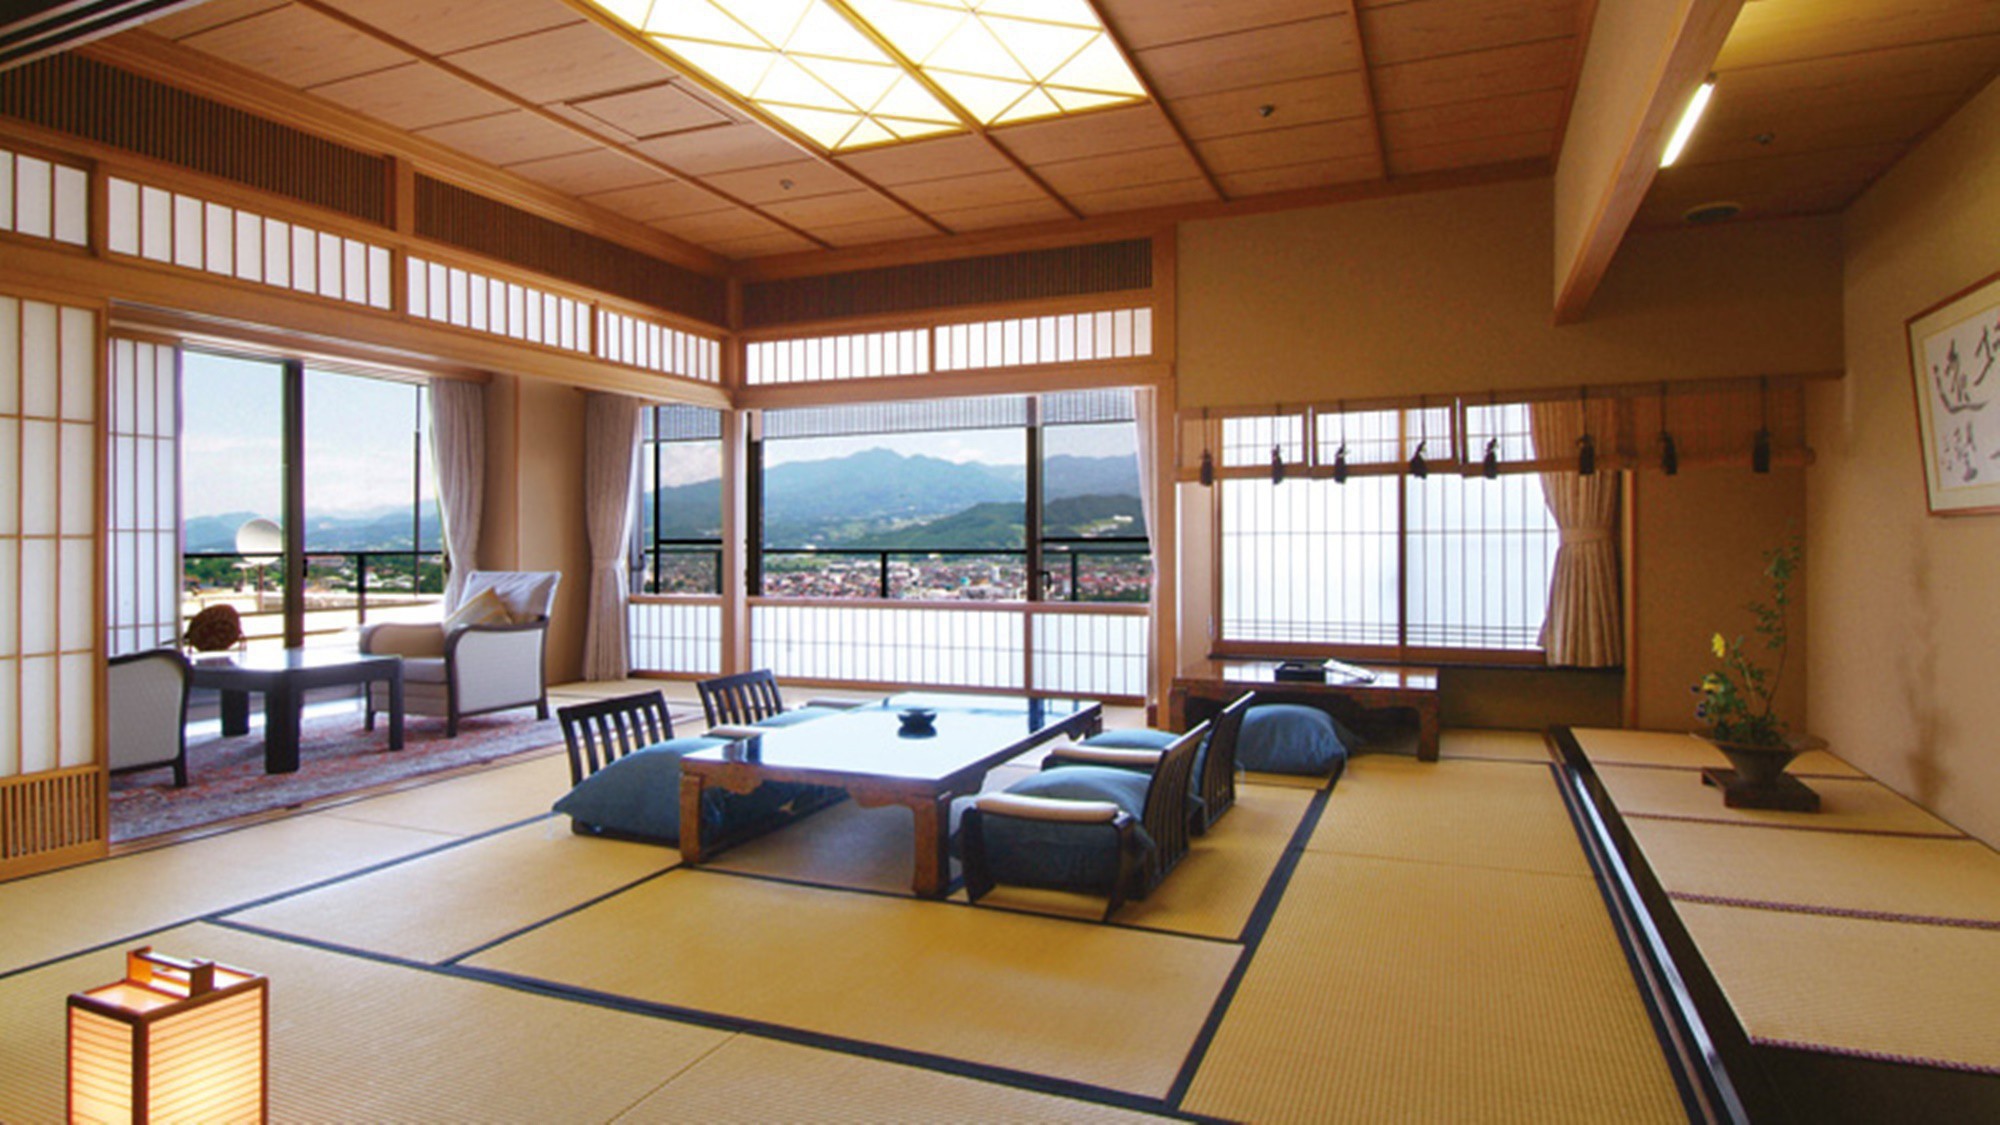 【貴賓室和室】全てが最上級。最上階ならではの蔵王連峰の絶景を贅沢に堪能できるお部屋。